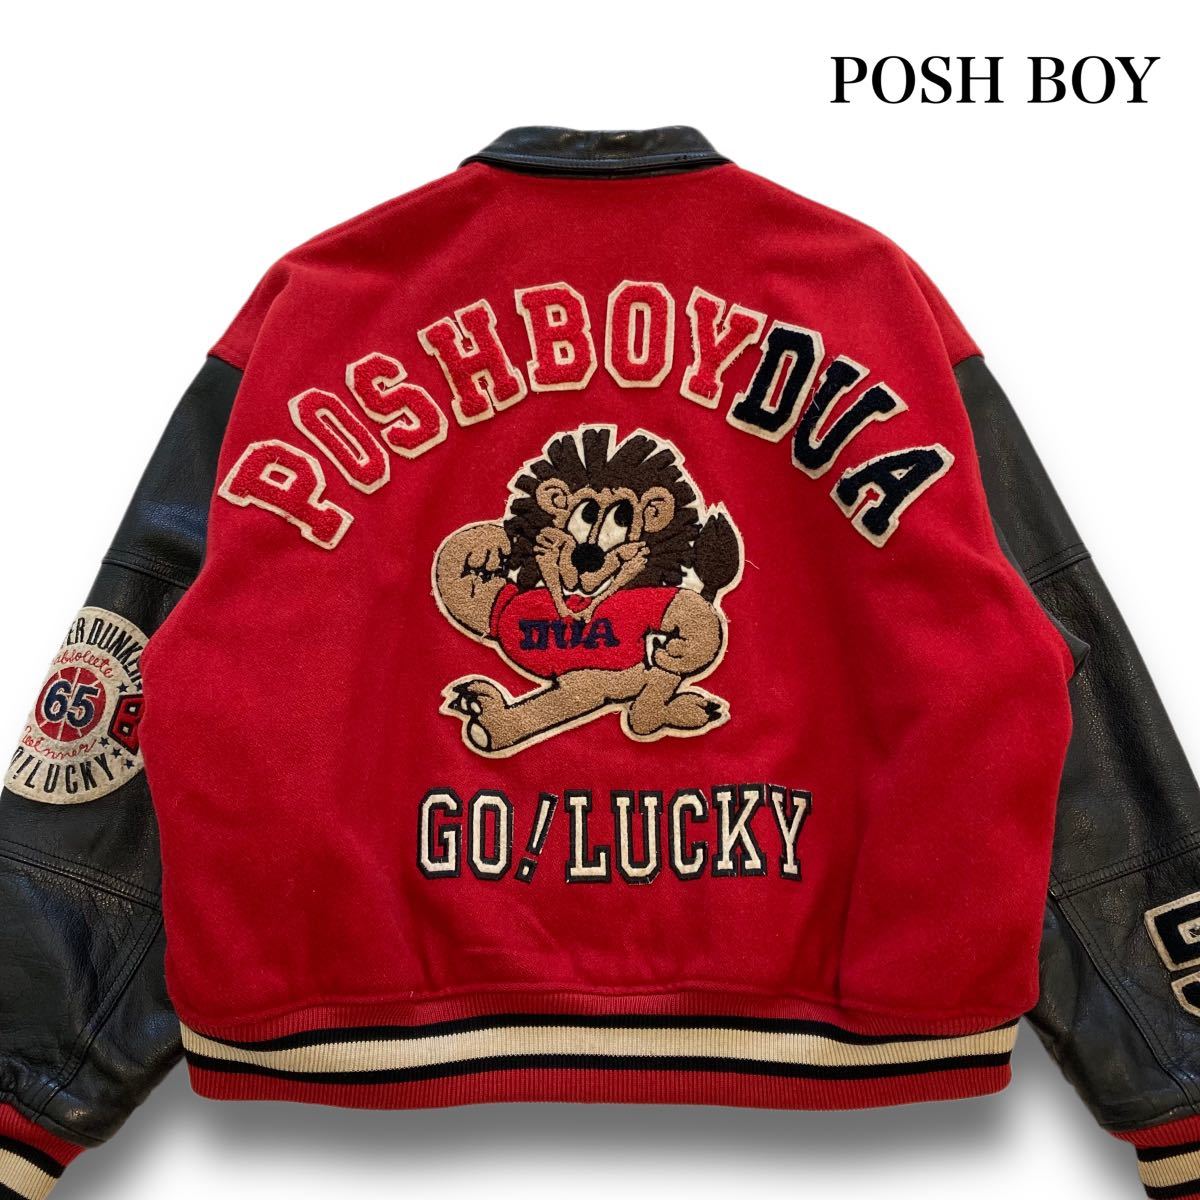 【POSHBOY】ポッシュボーイ ヴィンテージ スタジャン 刺繍ワッペン 牛革 袖革 アワードジャケット バック刺繍 ワッペン 80s 80年代 古着